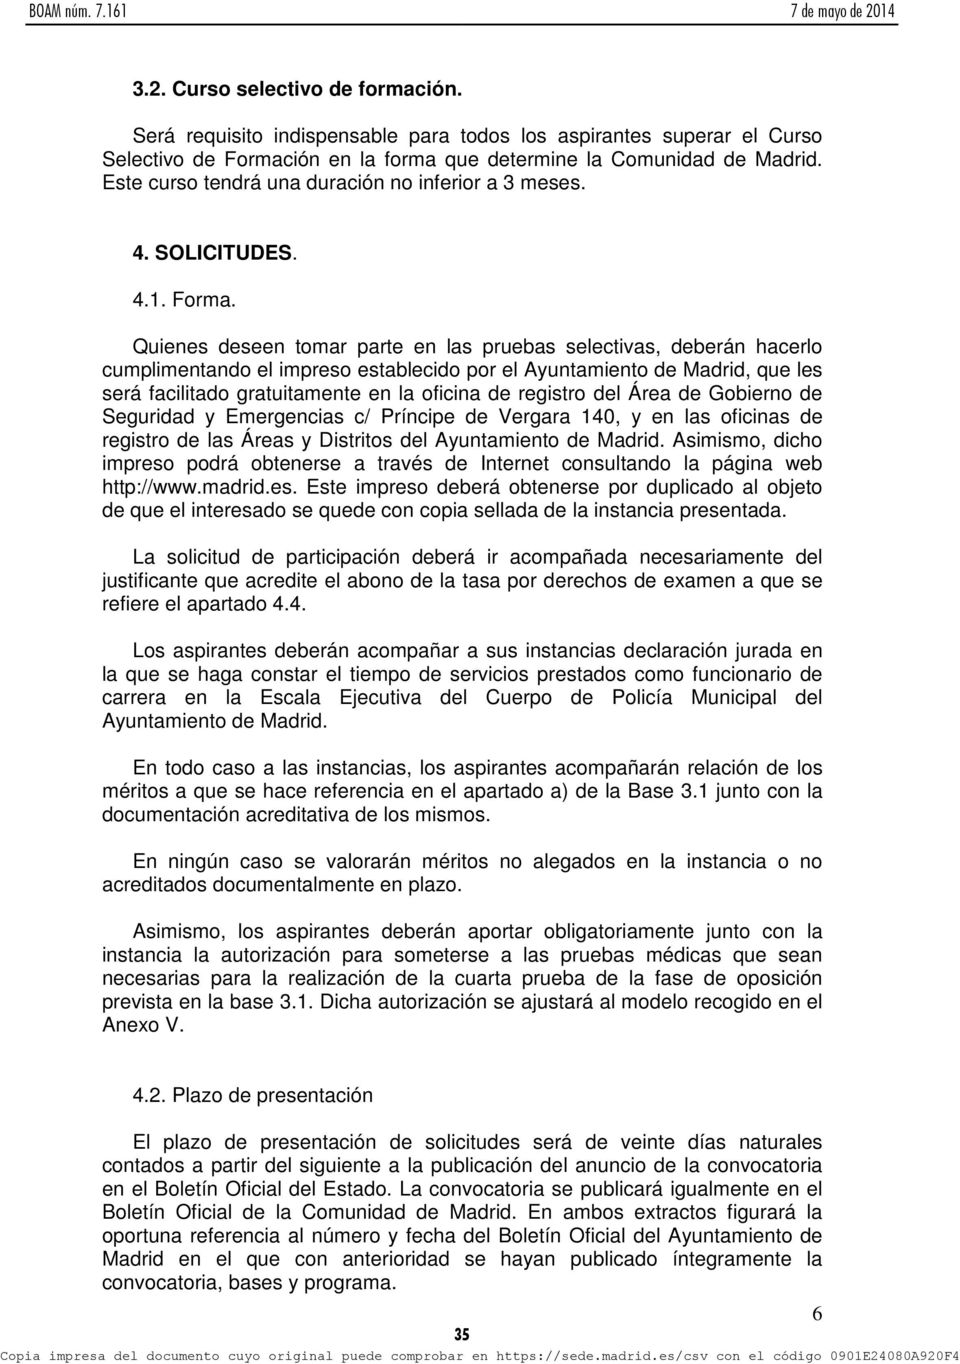 Quienes deseen tomar parte en las pruebas selectivas, deberán hacerlo cumplimentando el impreso establecido por el Ayuntamiento de Madrid, que les será facilitado gratuitamente en la oficina de